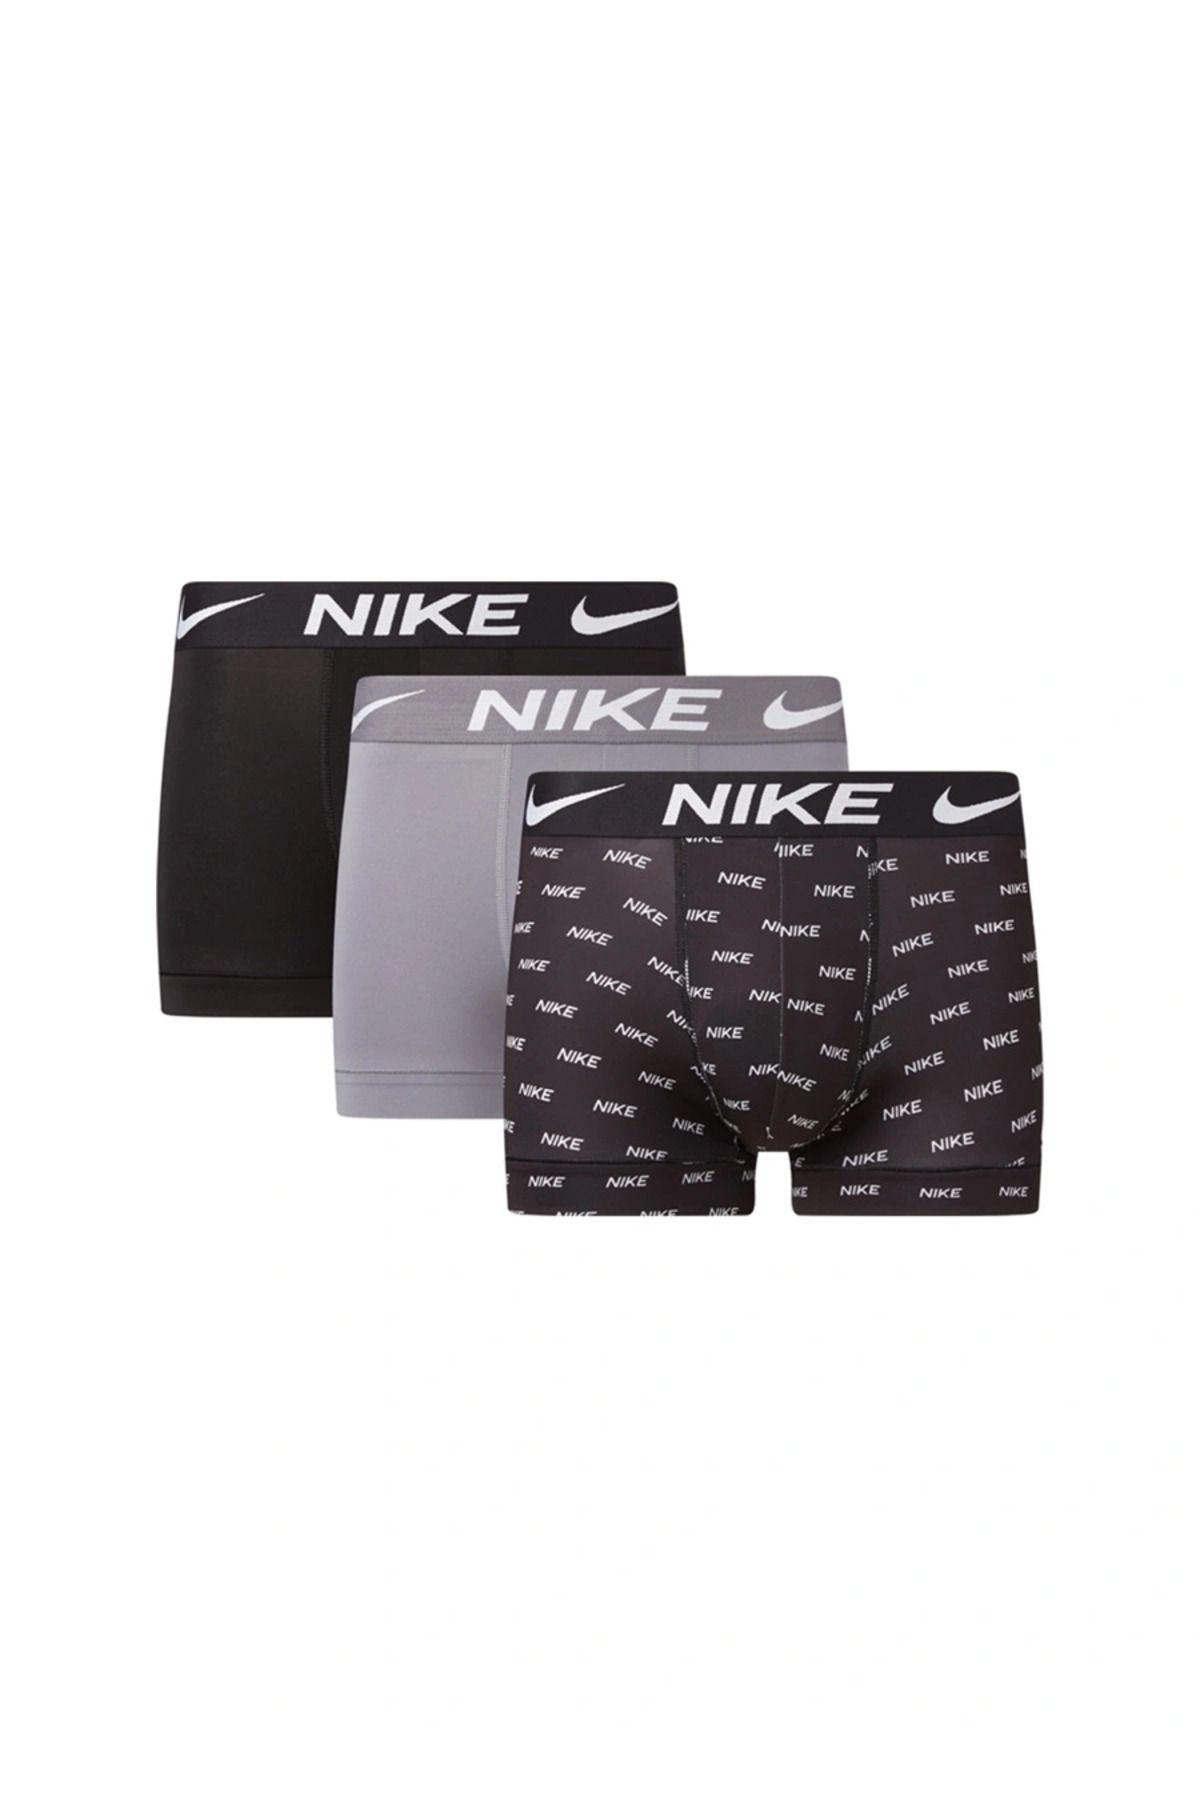 Nike Erkek Marka Logolu Elastik Bantlı Günlük Kullanıma Uygun Siyah-Gri-Siyah Boxer 0000Ke1156-9Sc